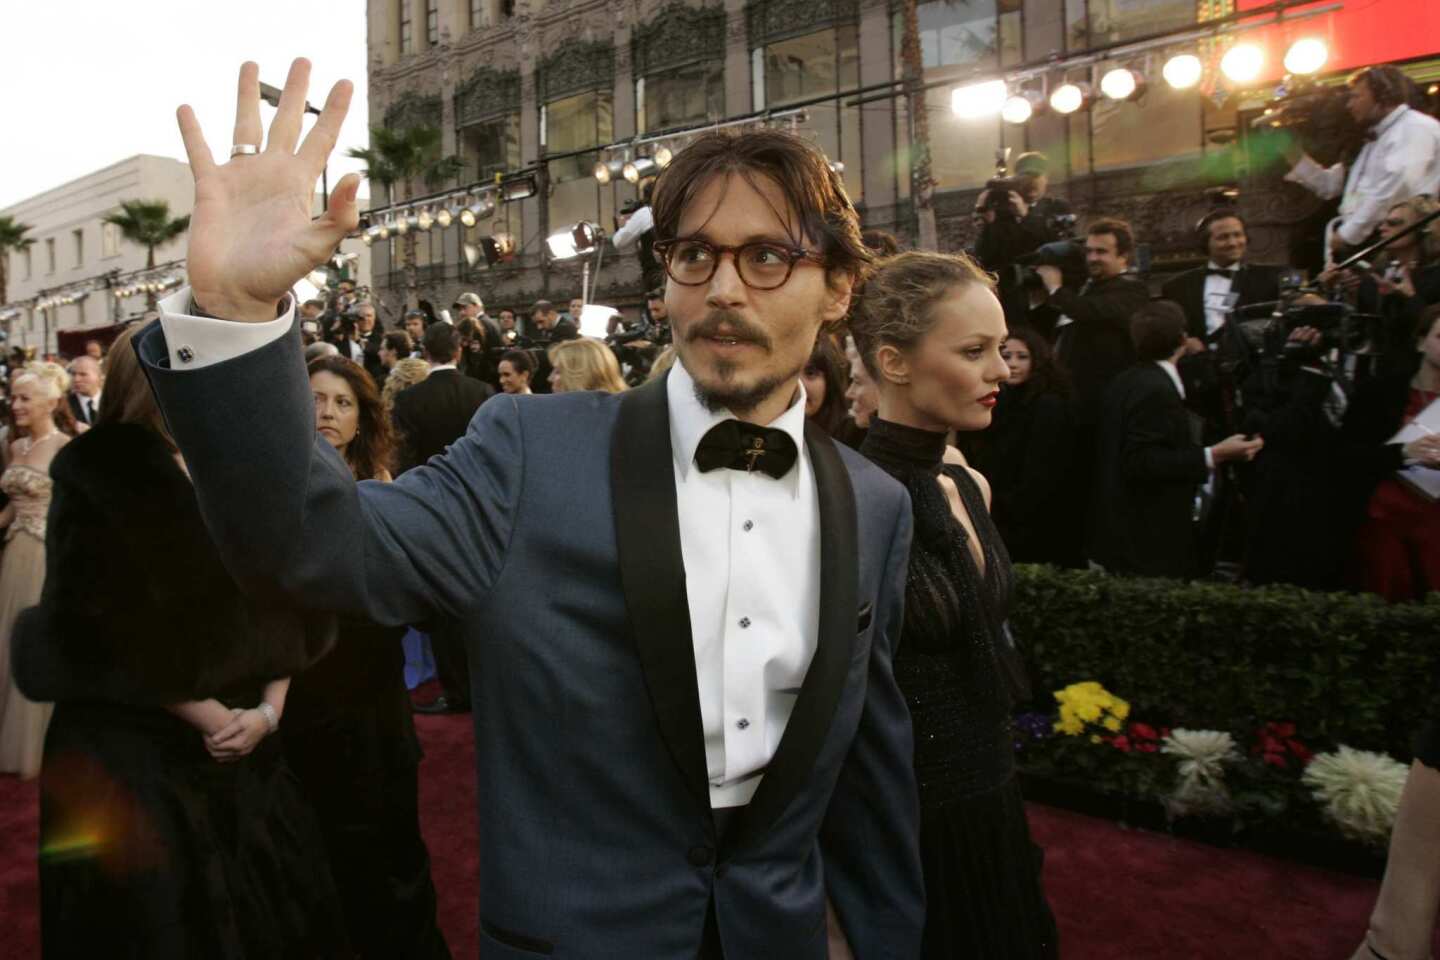 Johnny Depp: Fan favorite